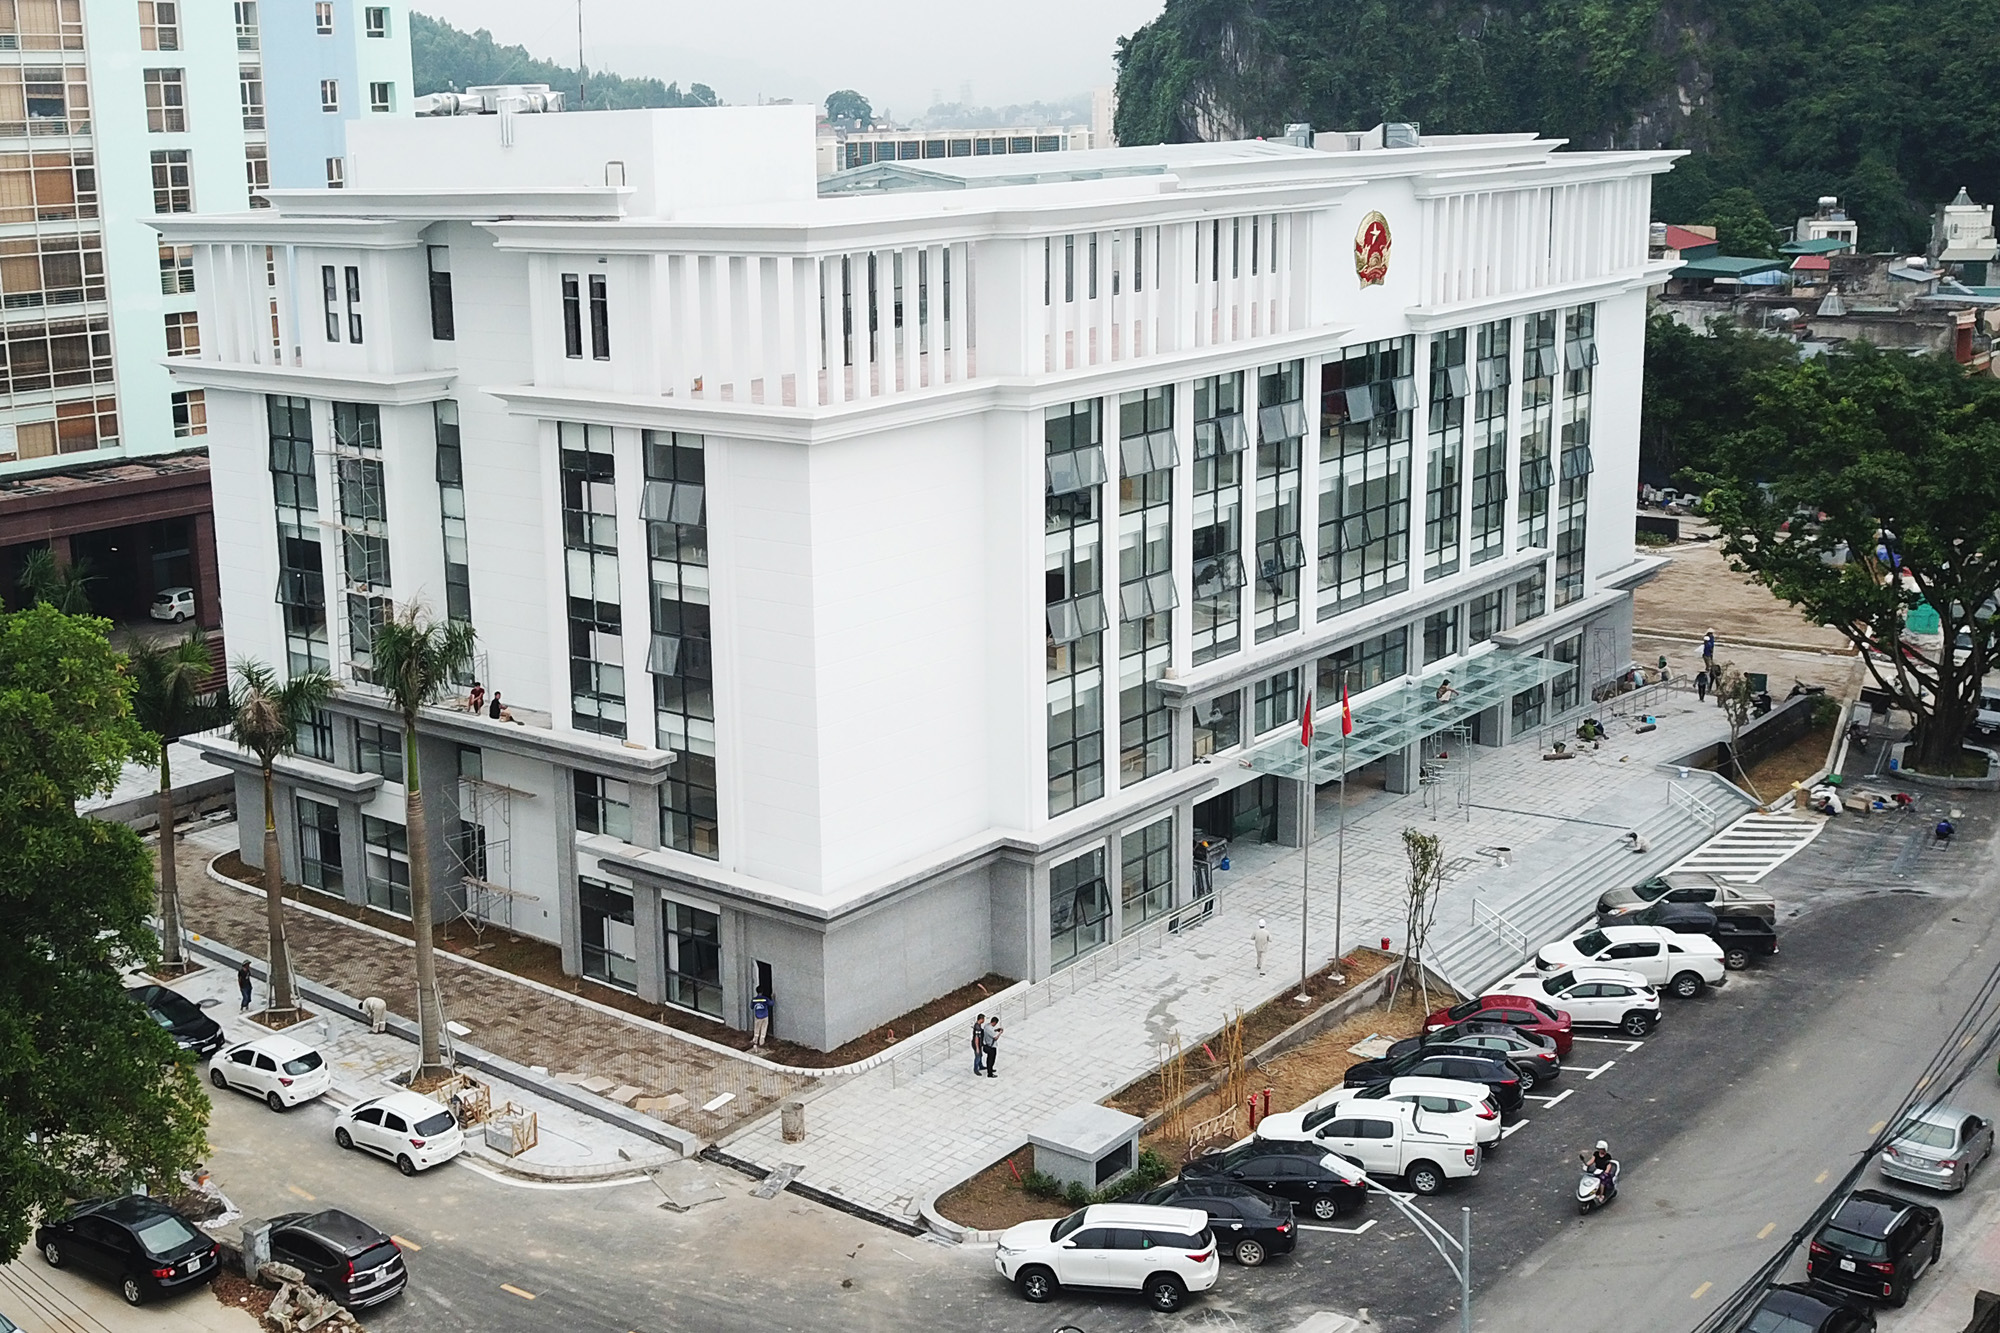 Quảng Ninh: Trung tâm phục vụ hành chính công bắt đầu hoạt động